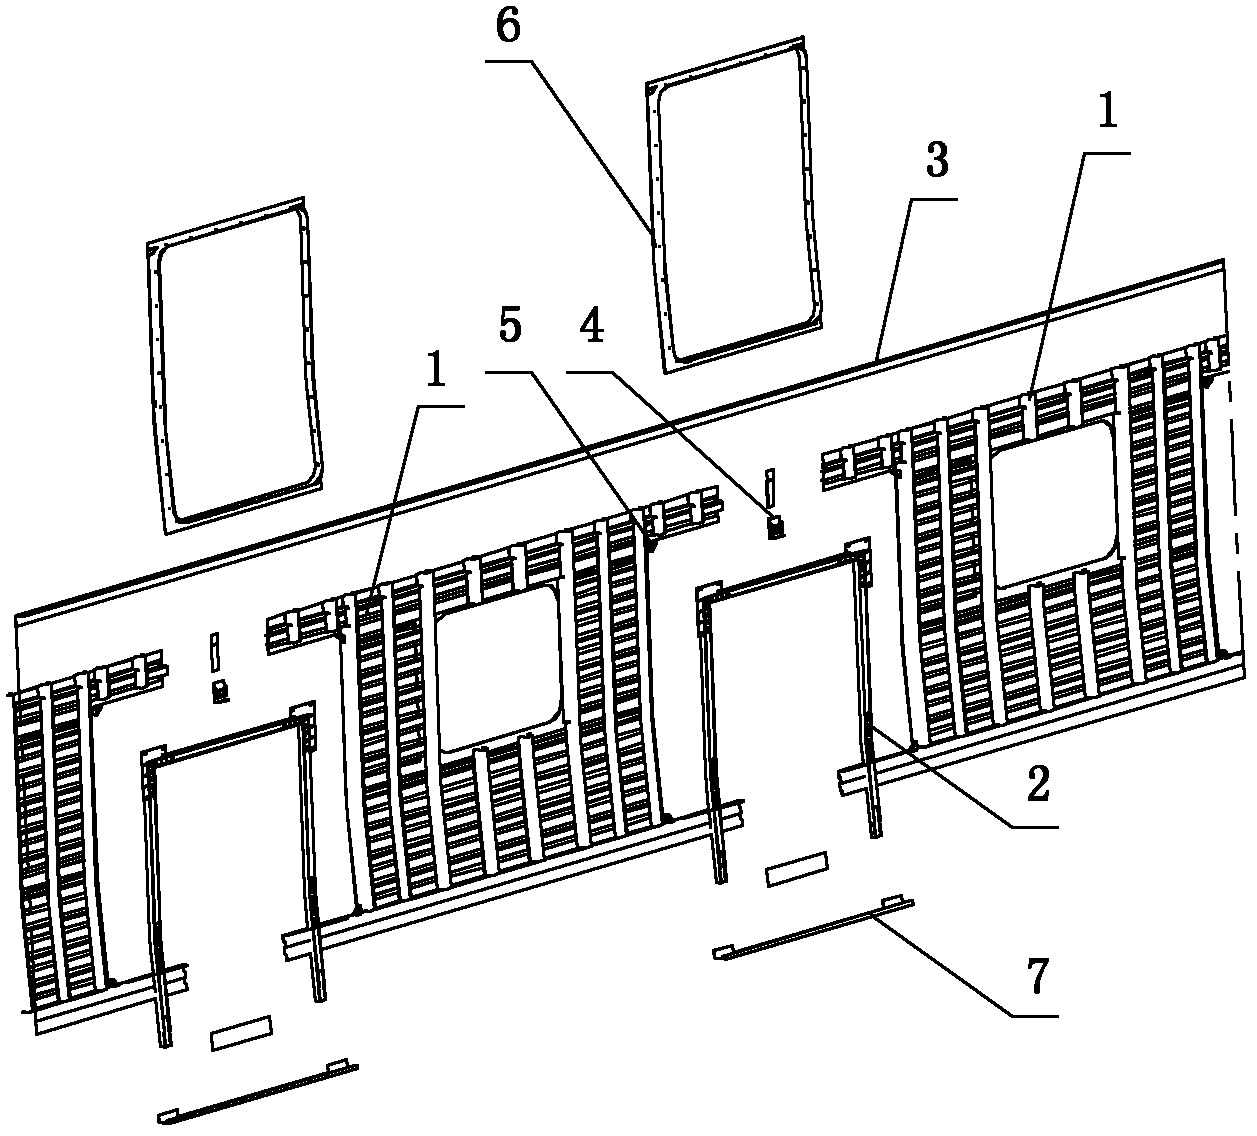 Railway vehicle side wall and welding method thereof